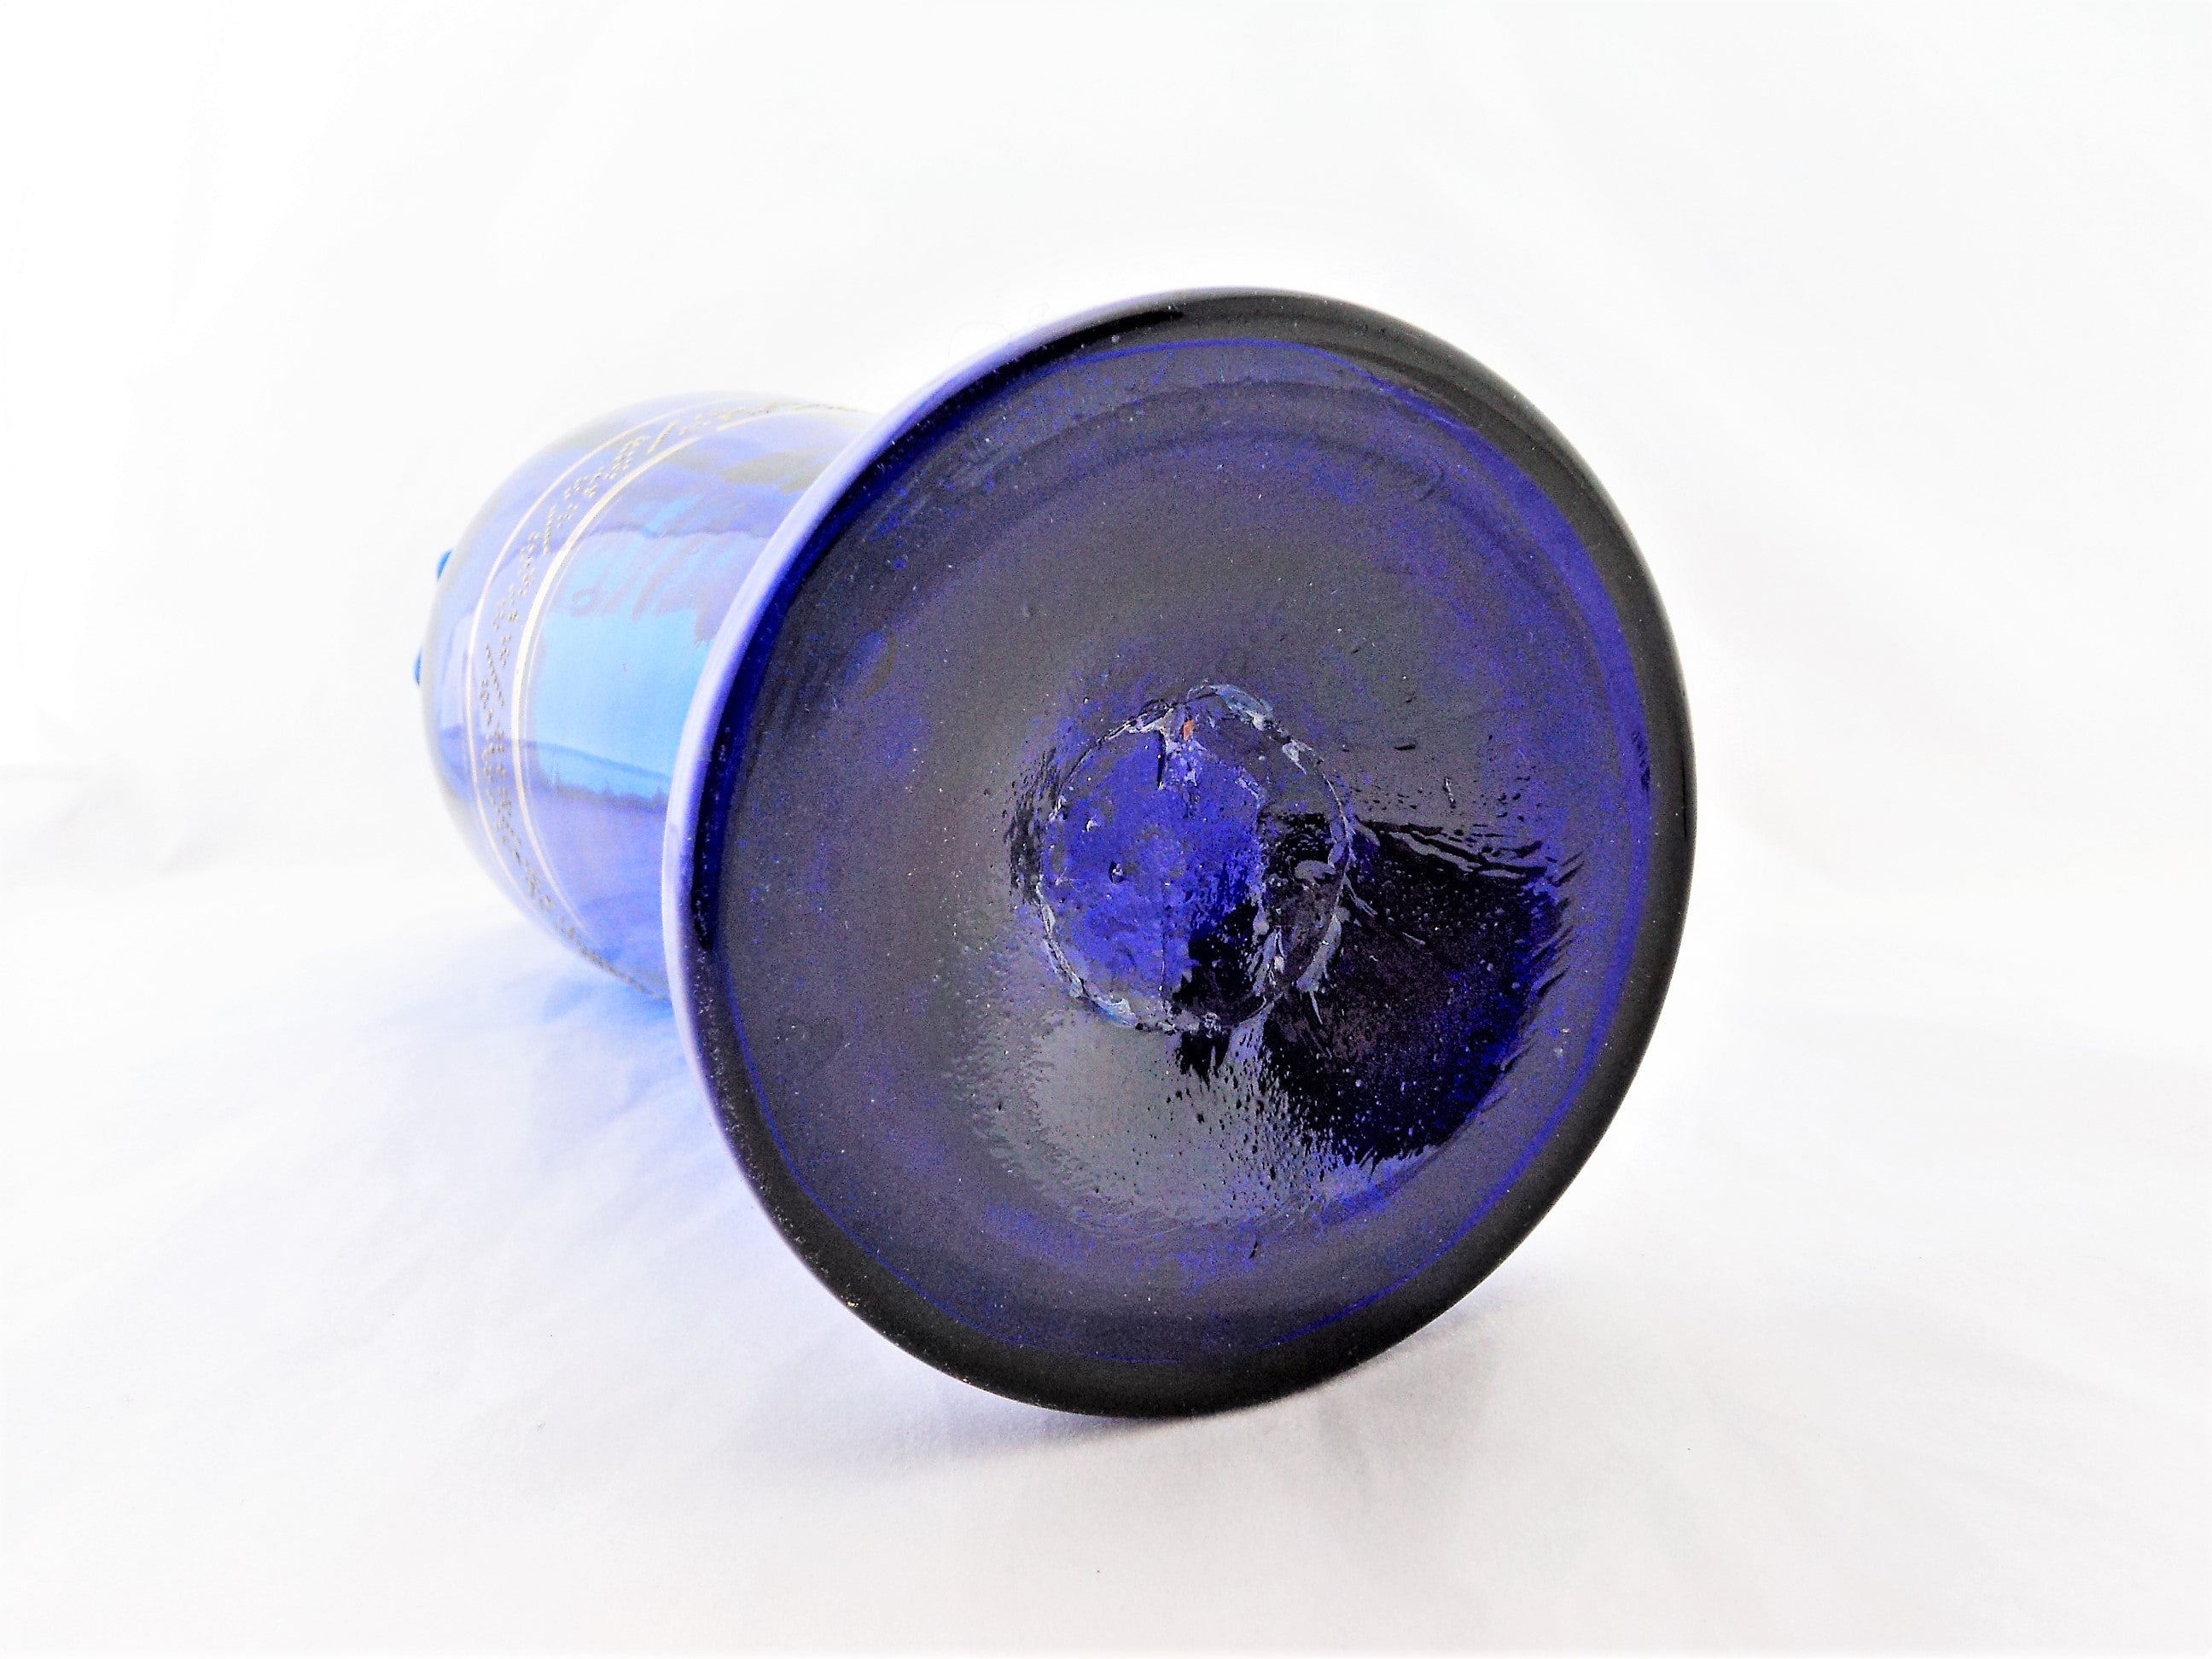 Victorian Cobalt Blue and Enamel Vase